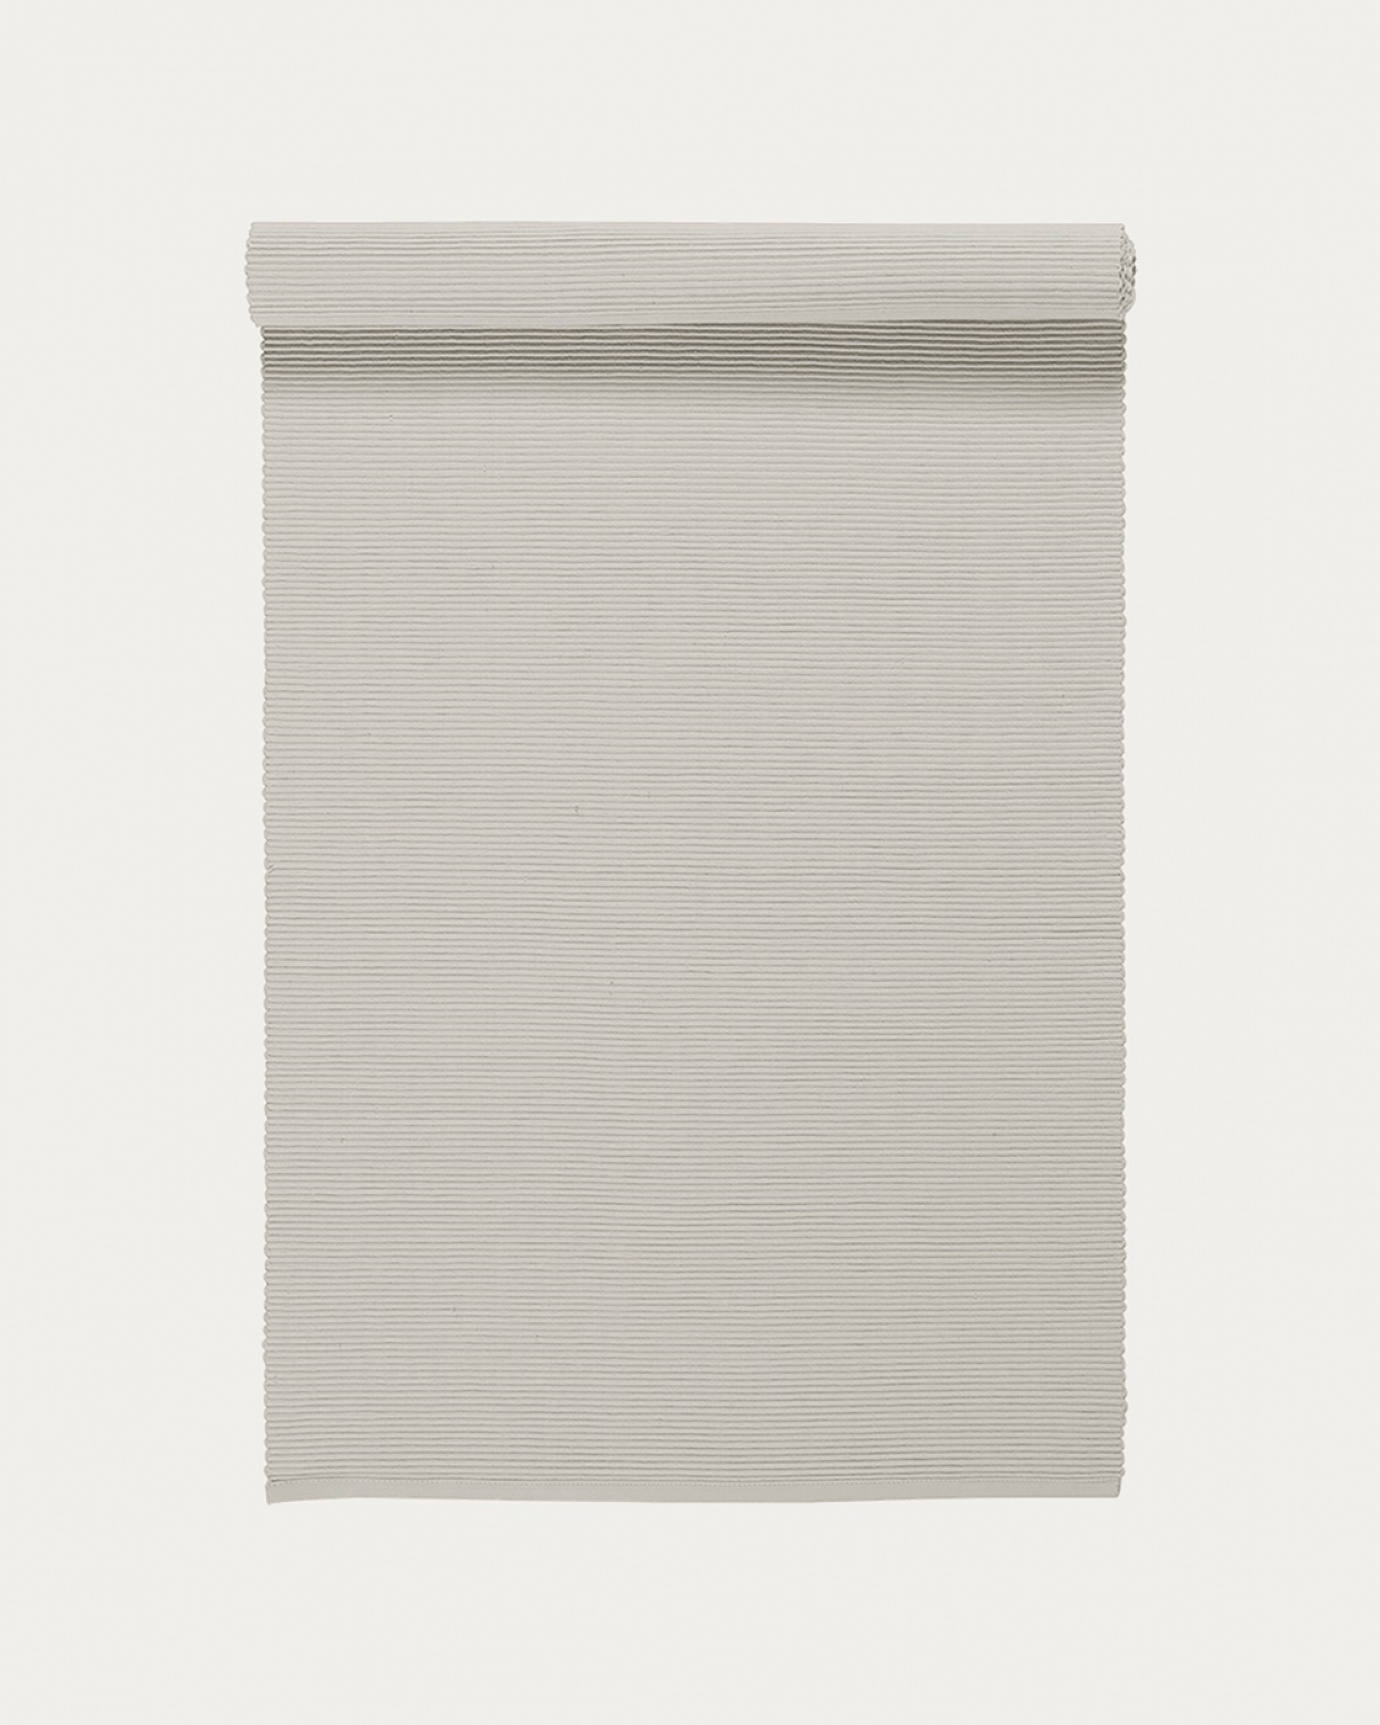 Produktbild hellgrau UNI Tischläufer aus weicher Baumwolle in Rippenqualität von LINUM DESIGN. Größe 45x150 cm.